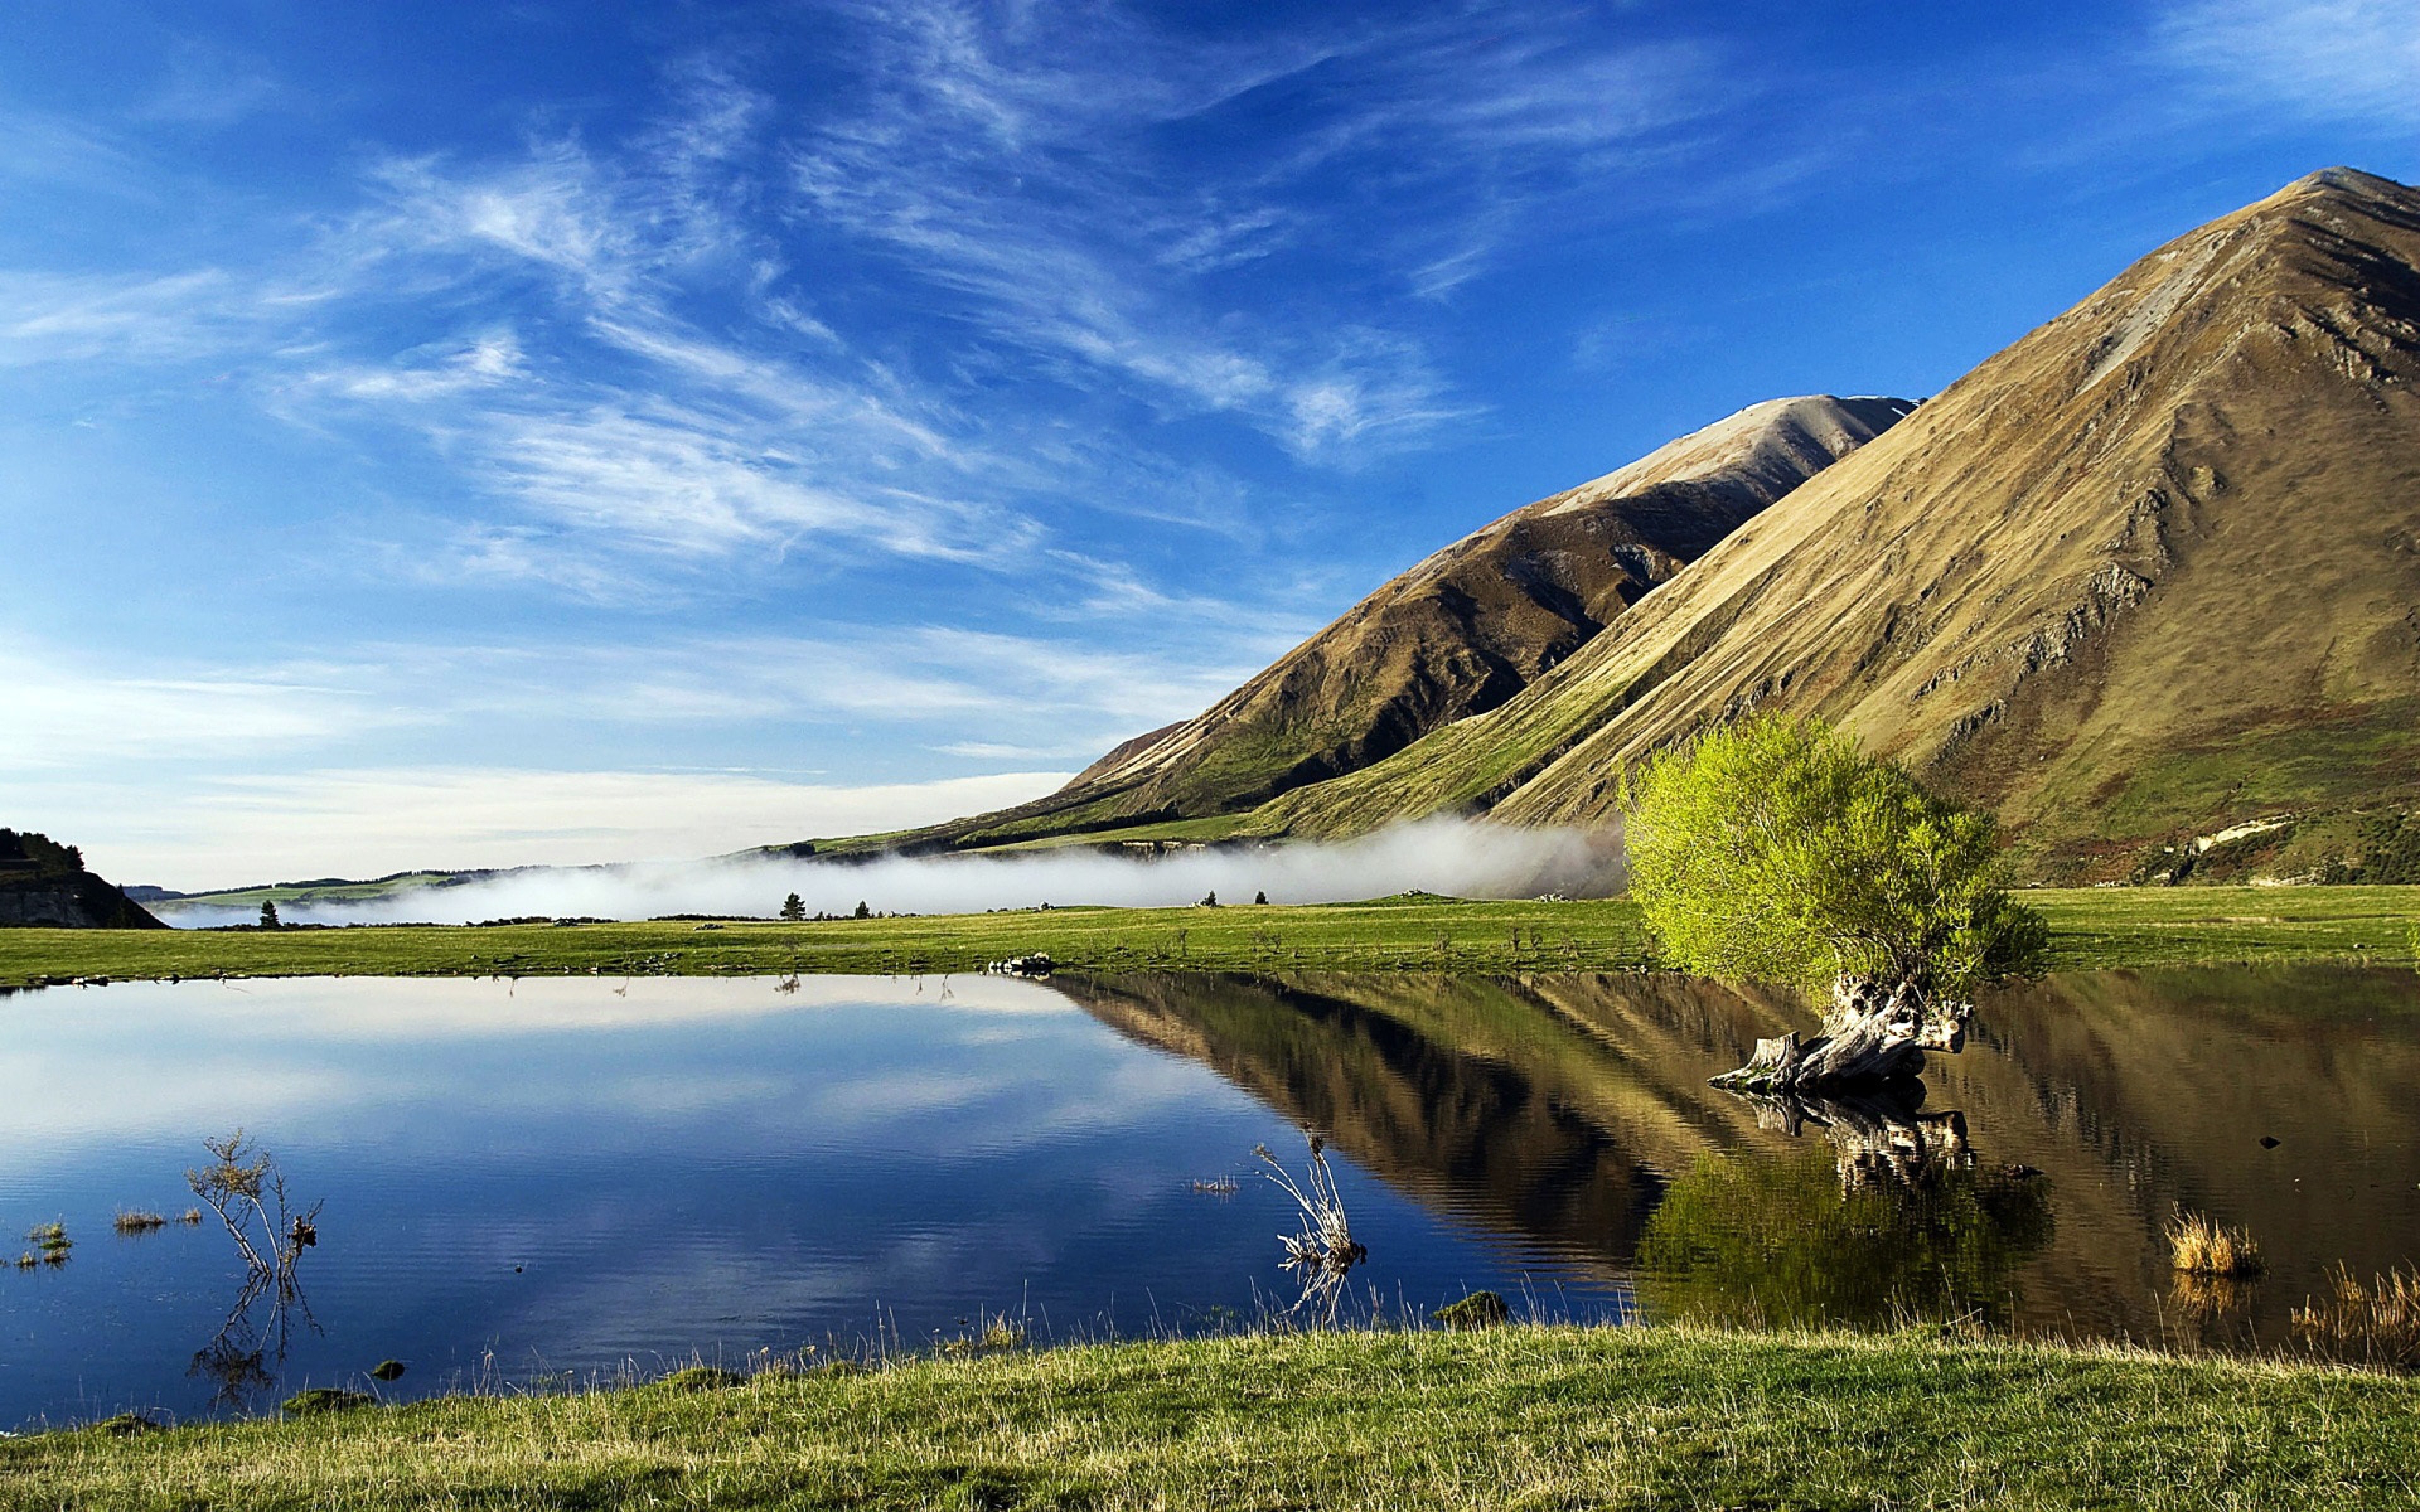 Изображения на рабочий стол компьютера. Озеро Квилл новая Зеландия. Озеро Этив Шотландия. Озеро Сиони. Пейзажи природы.